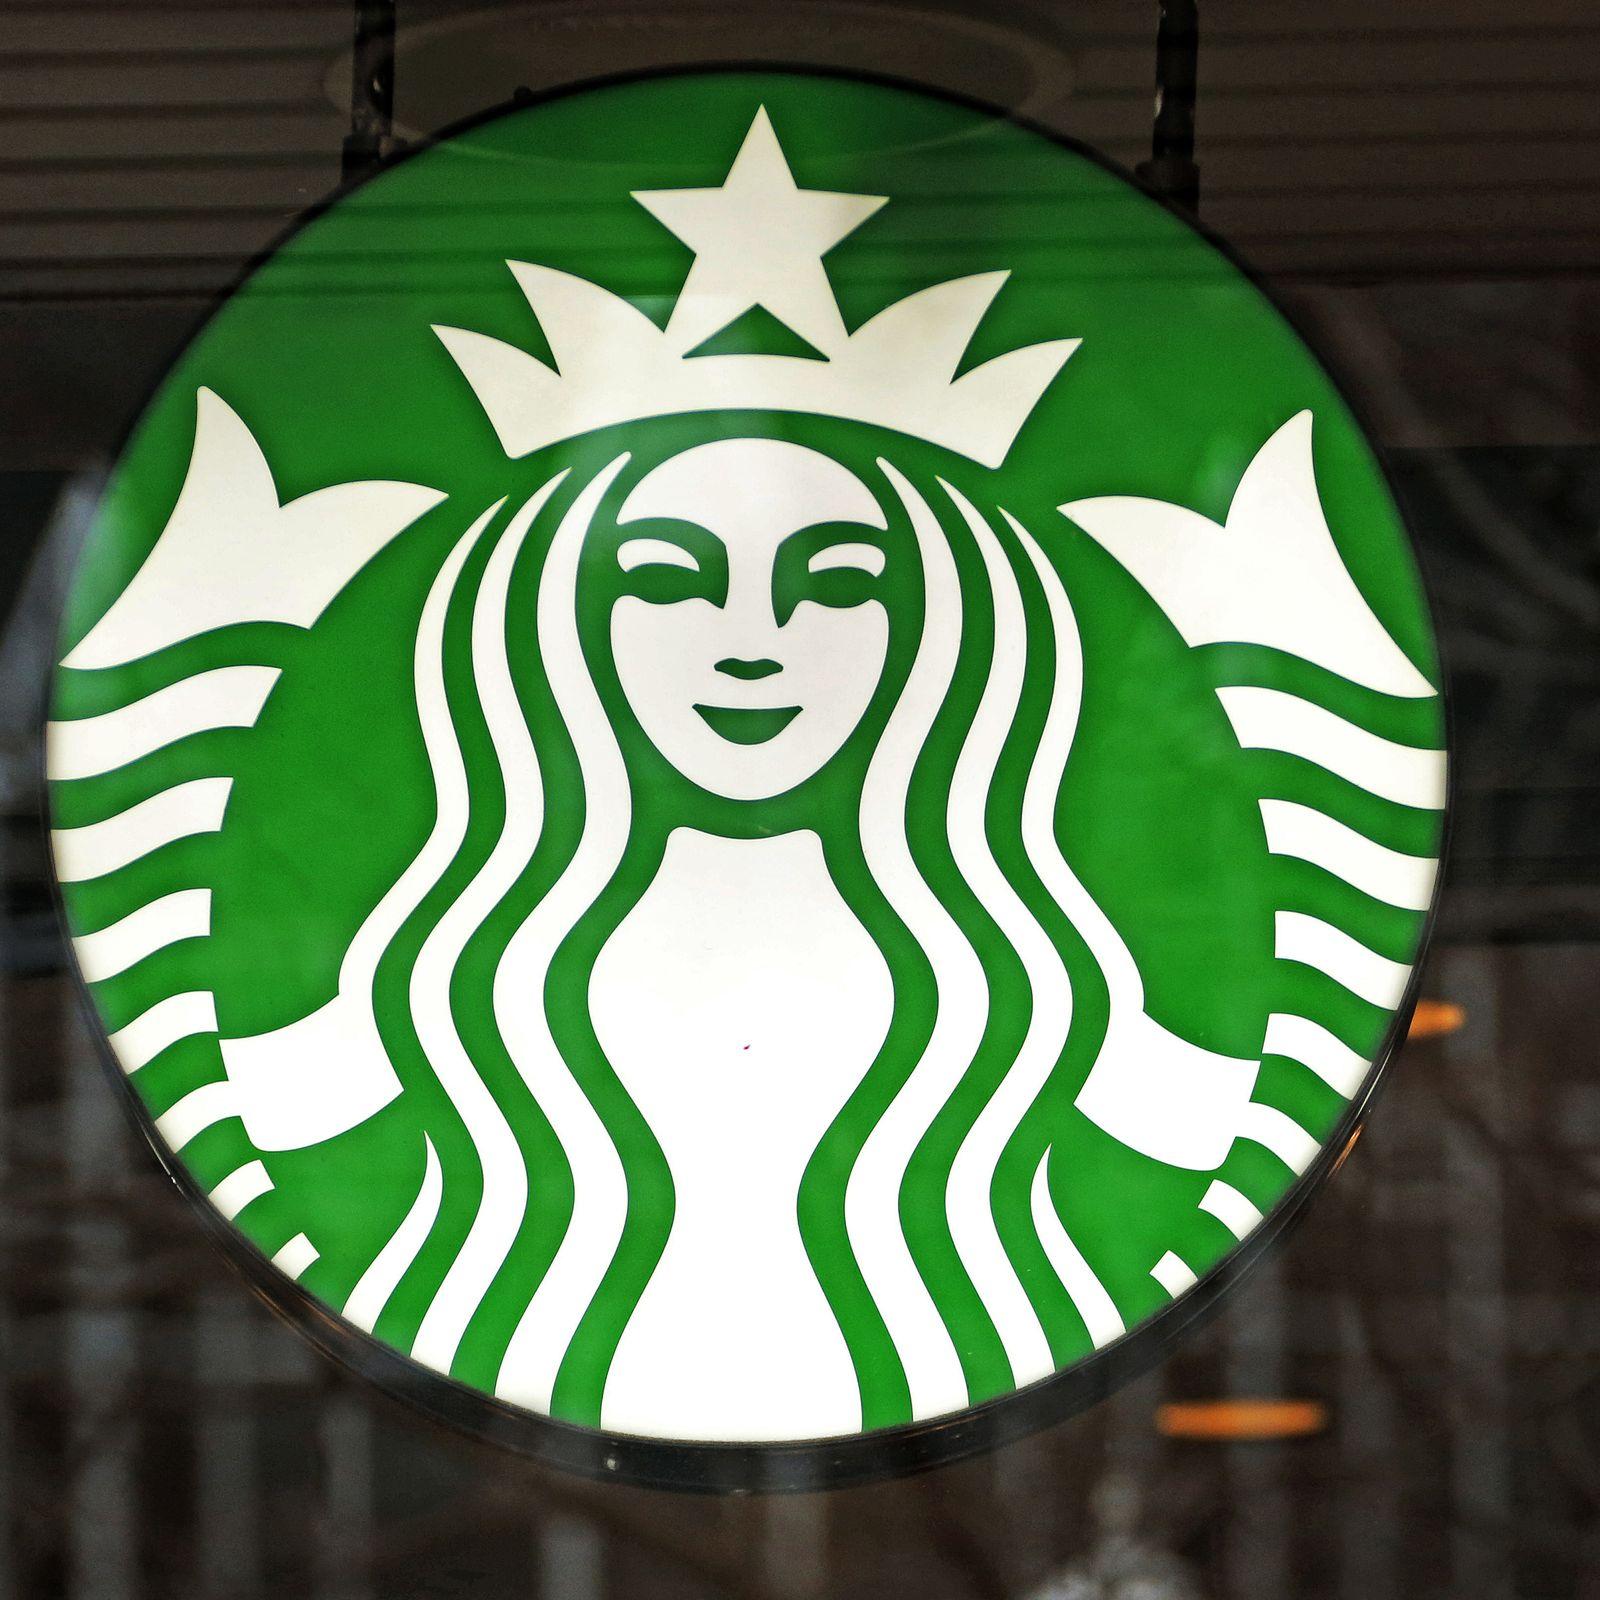 Fake Starbucks Logo - After Starbucks debacle, 4chan trolls make fake coupons enticing